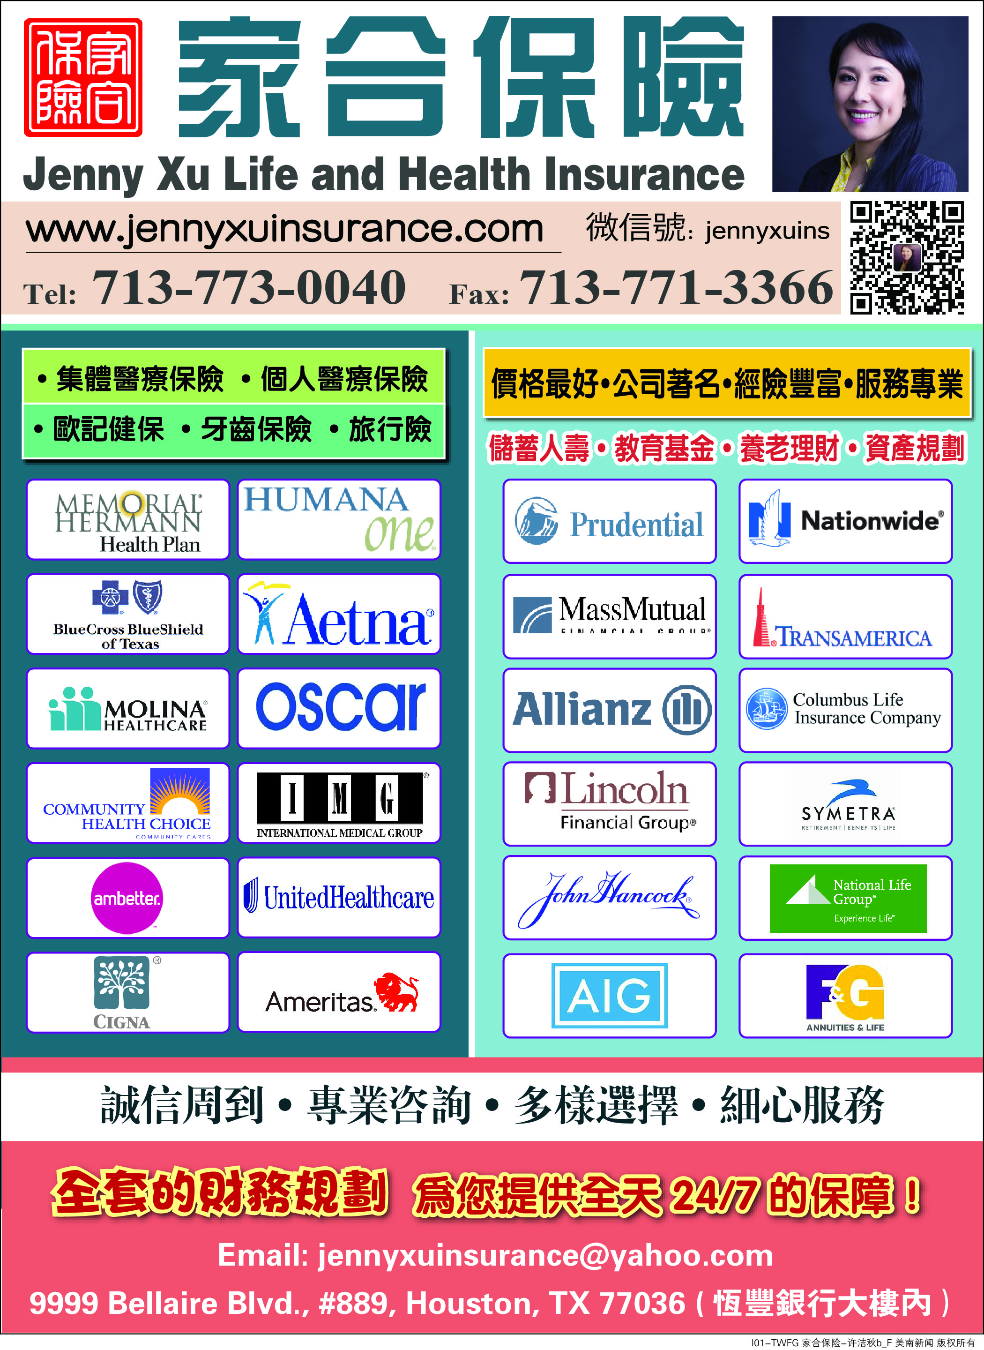 Jenny Xu Life and Health Insurance - 家合保险 许洁秋